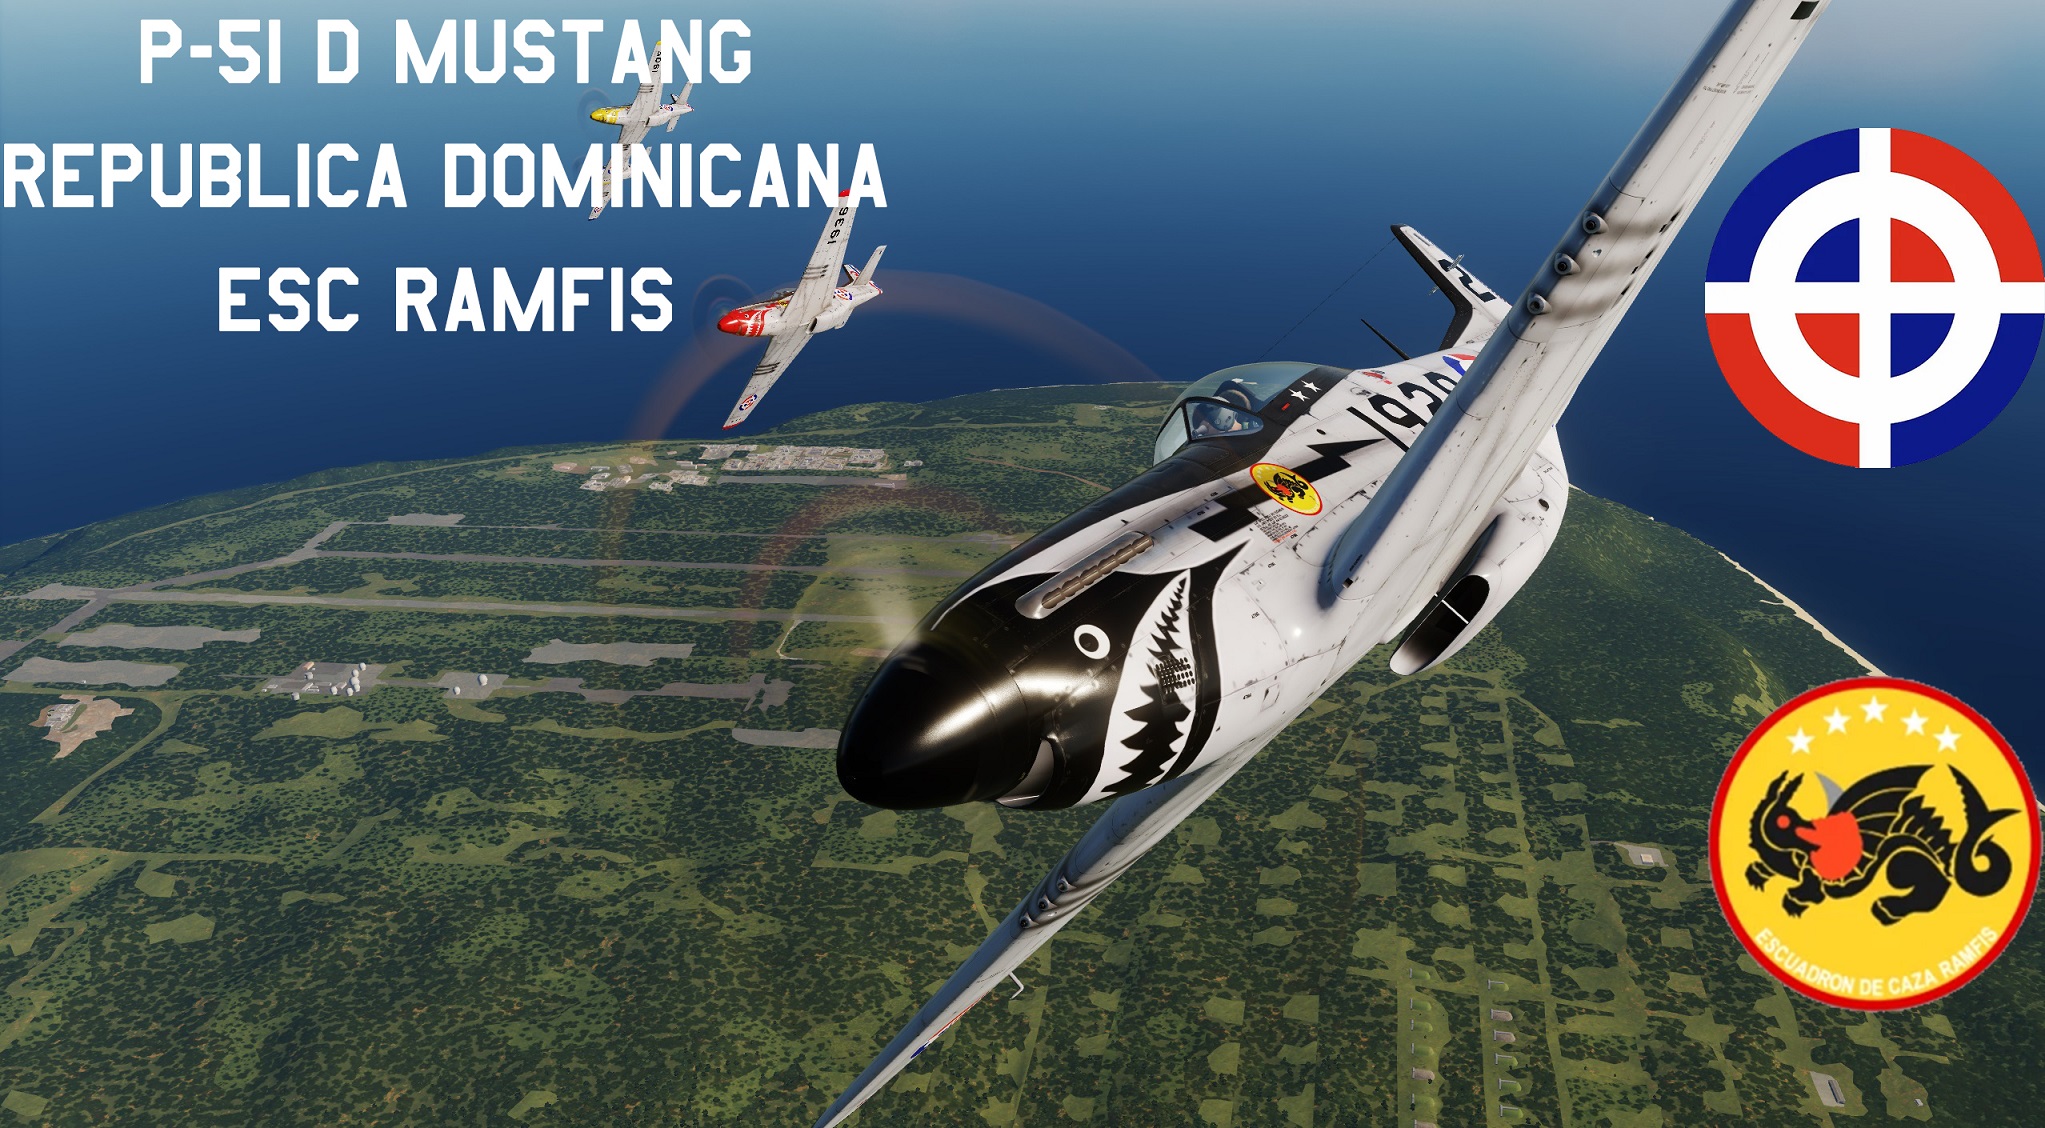 P-51D Republica Dominicana Esc RAMFIS Update 20jul22